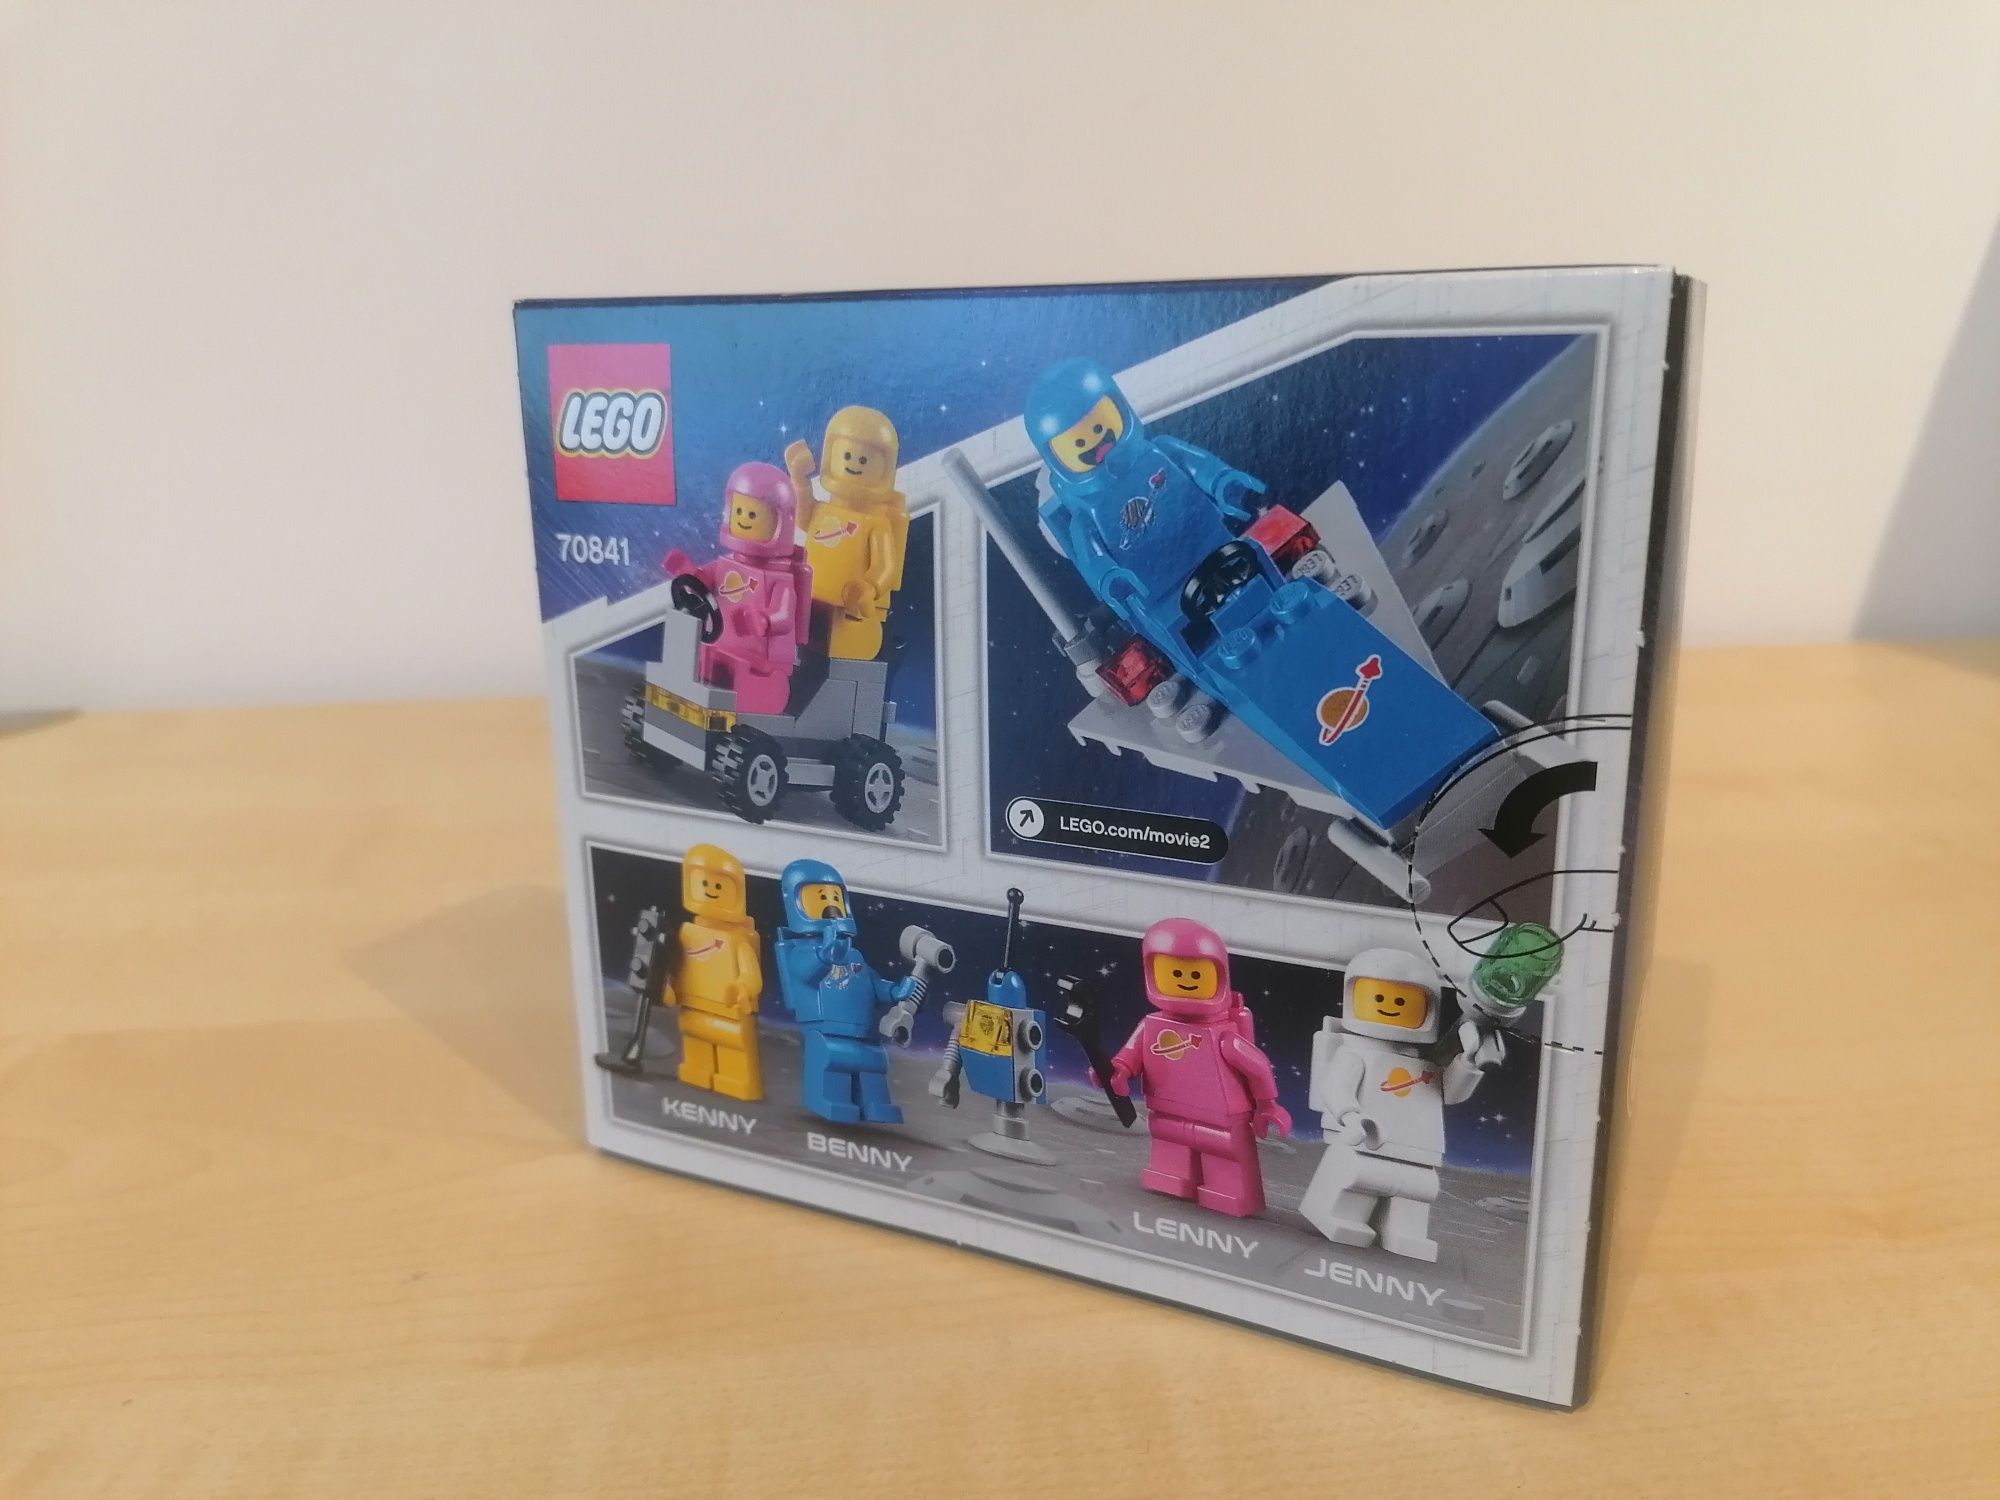 Lego 70841 echipa spatiala a lui Benny Lego Movie